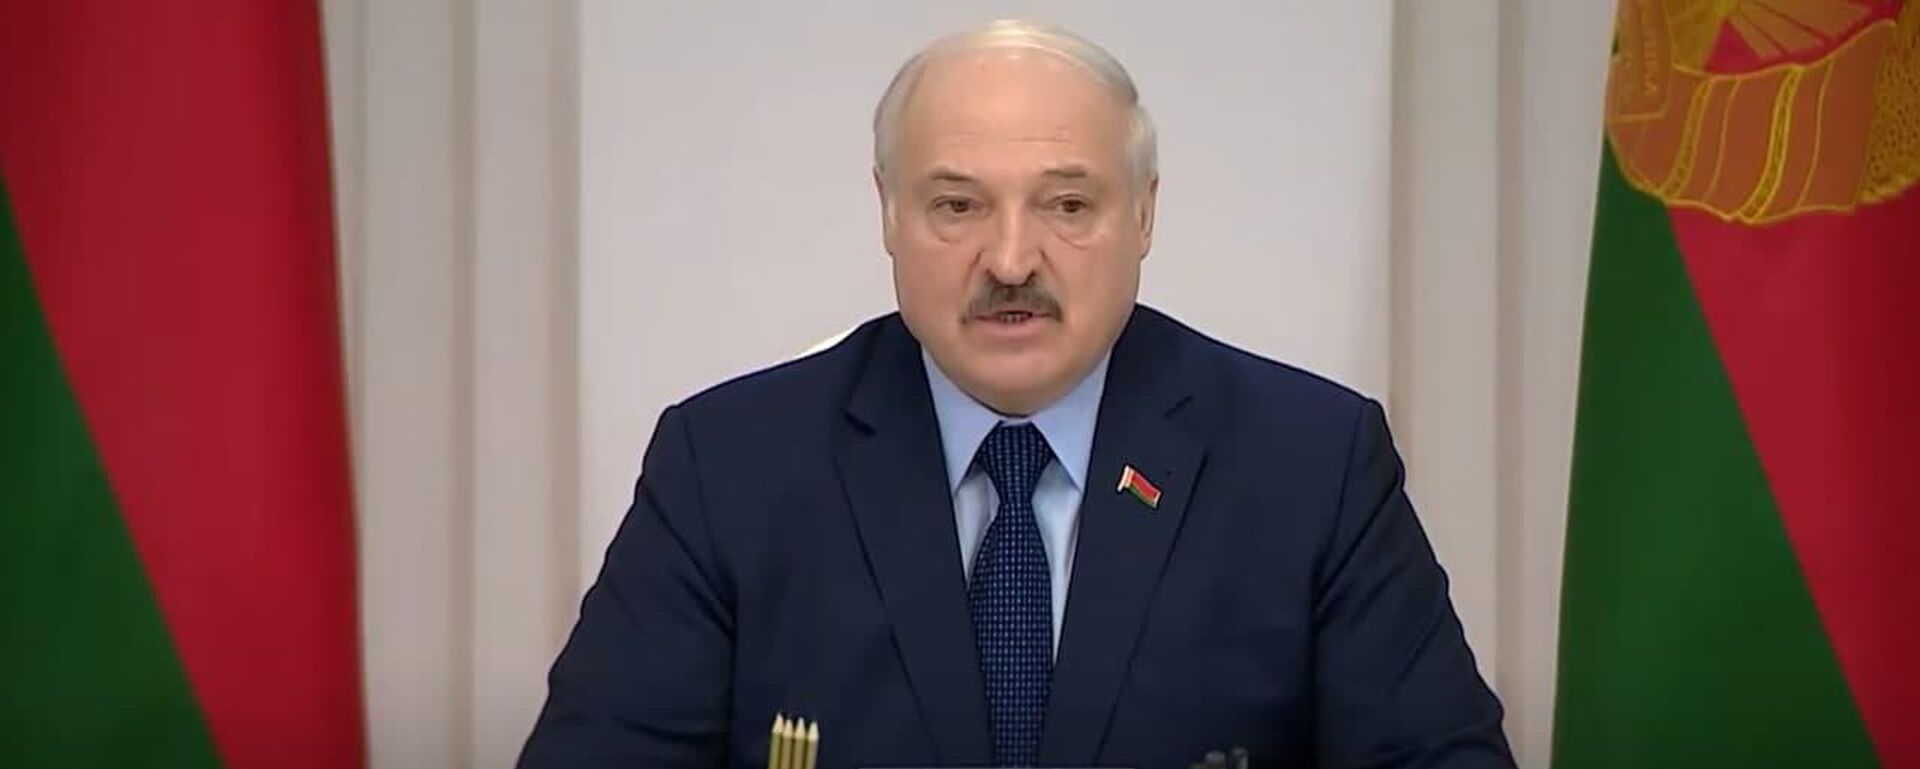 Лукашенко заявил о готовности отправить беженцев в Германию на самолете - Sputnik Беларусь, 1920, 15.11.2021